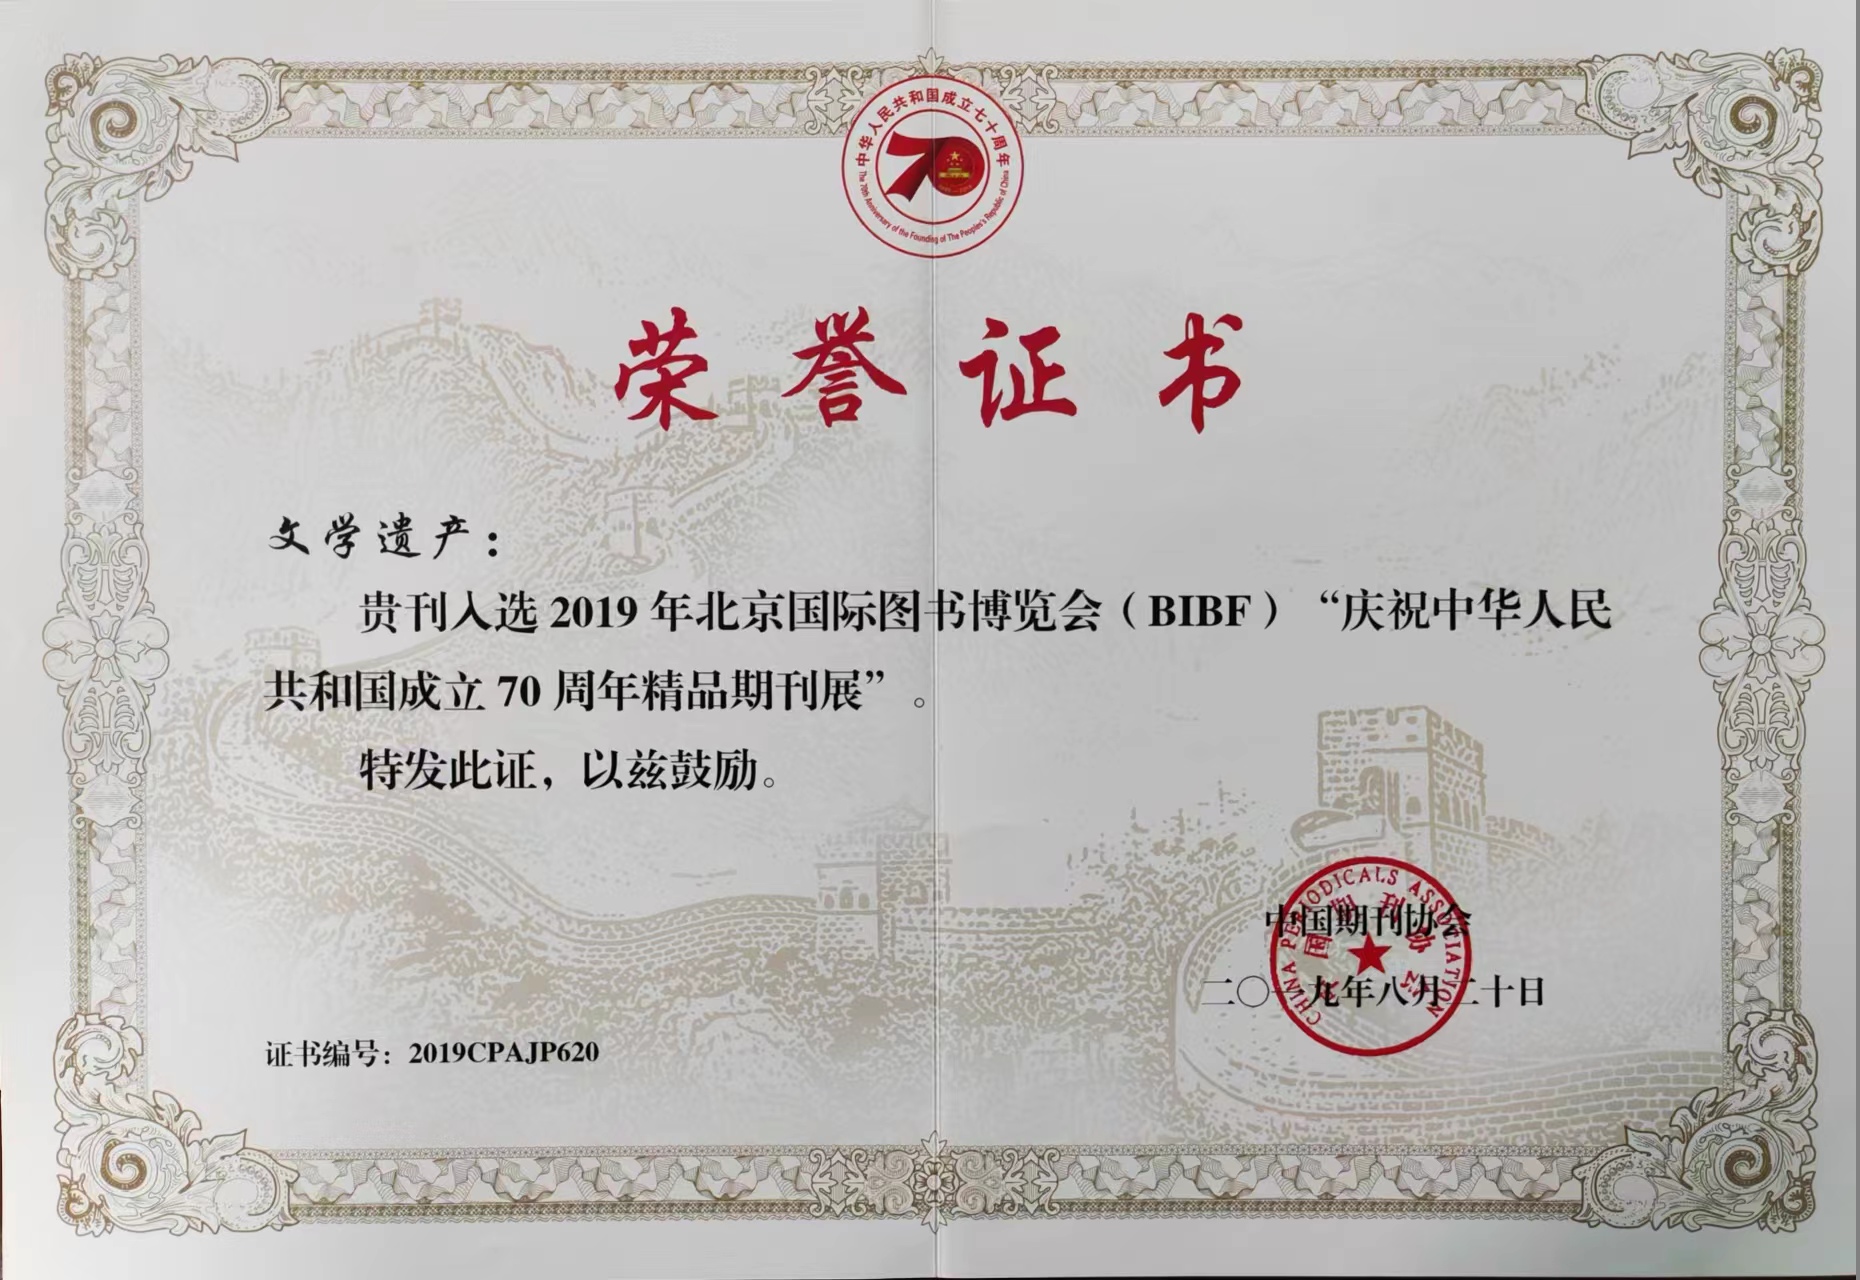 2.入选2019年北京国际图书博览会（BIBF）“庆祝中华人民共和国成立70周年精品期刊展”.jpg